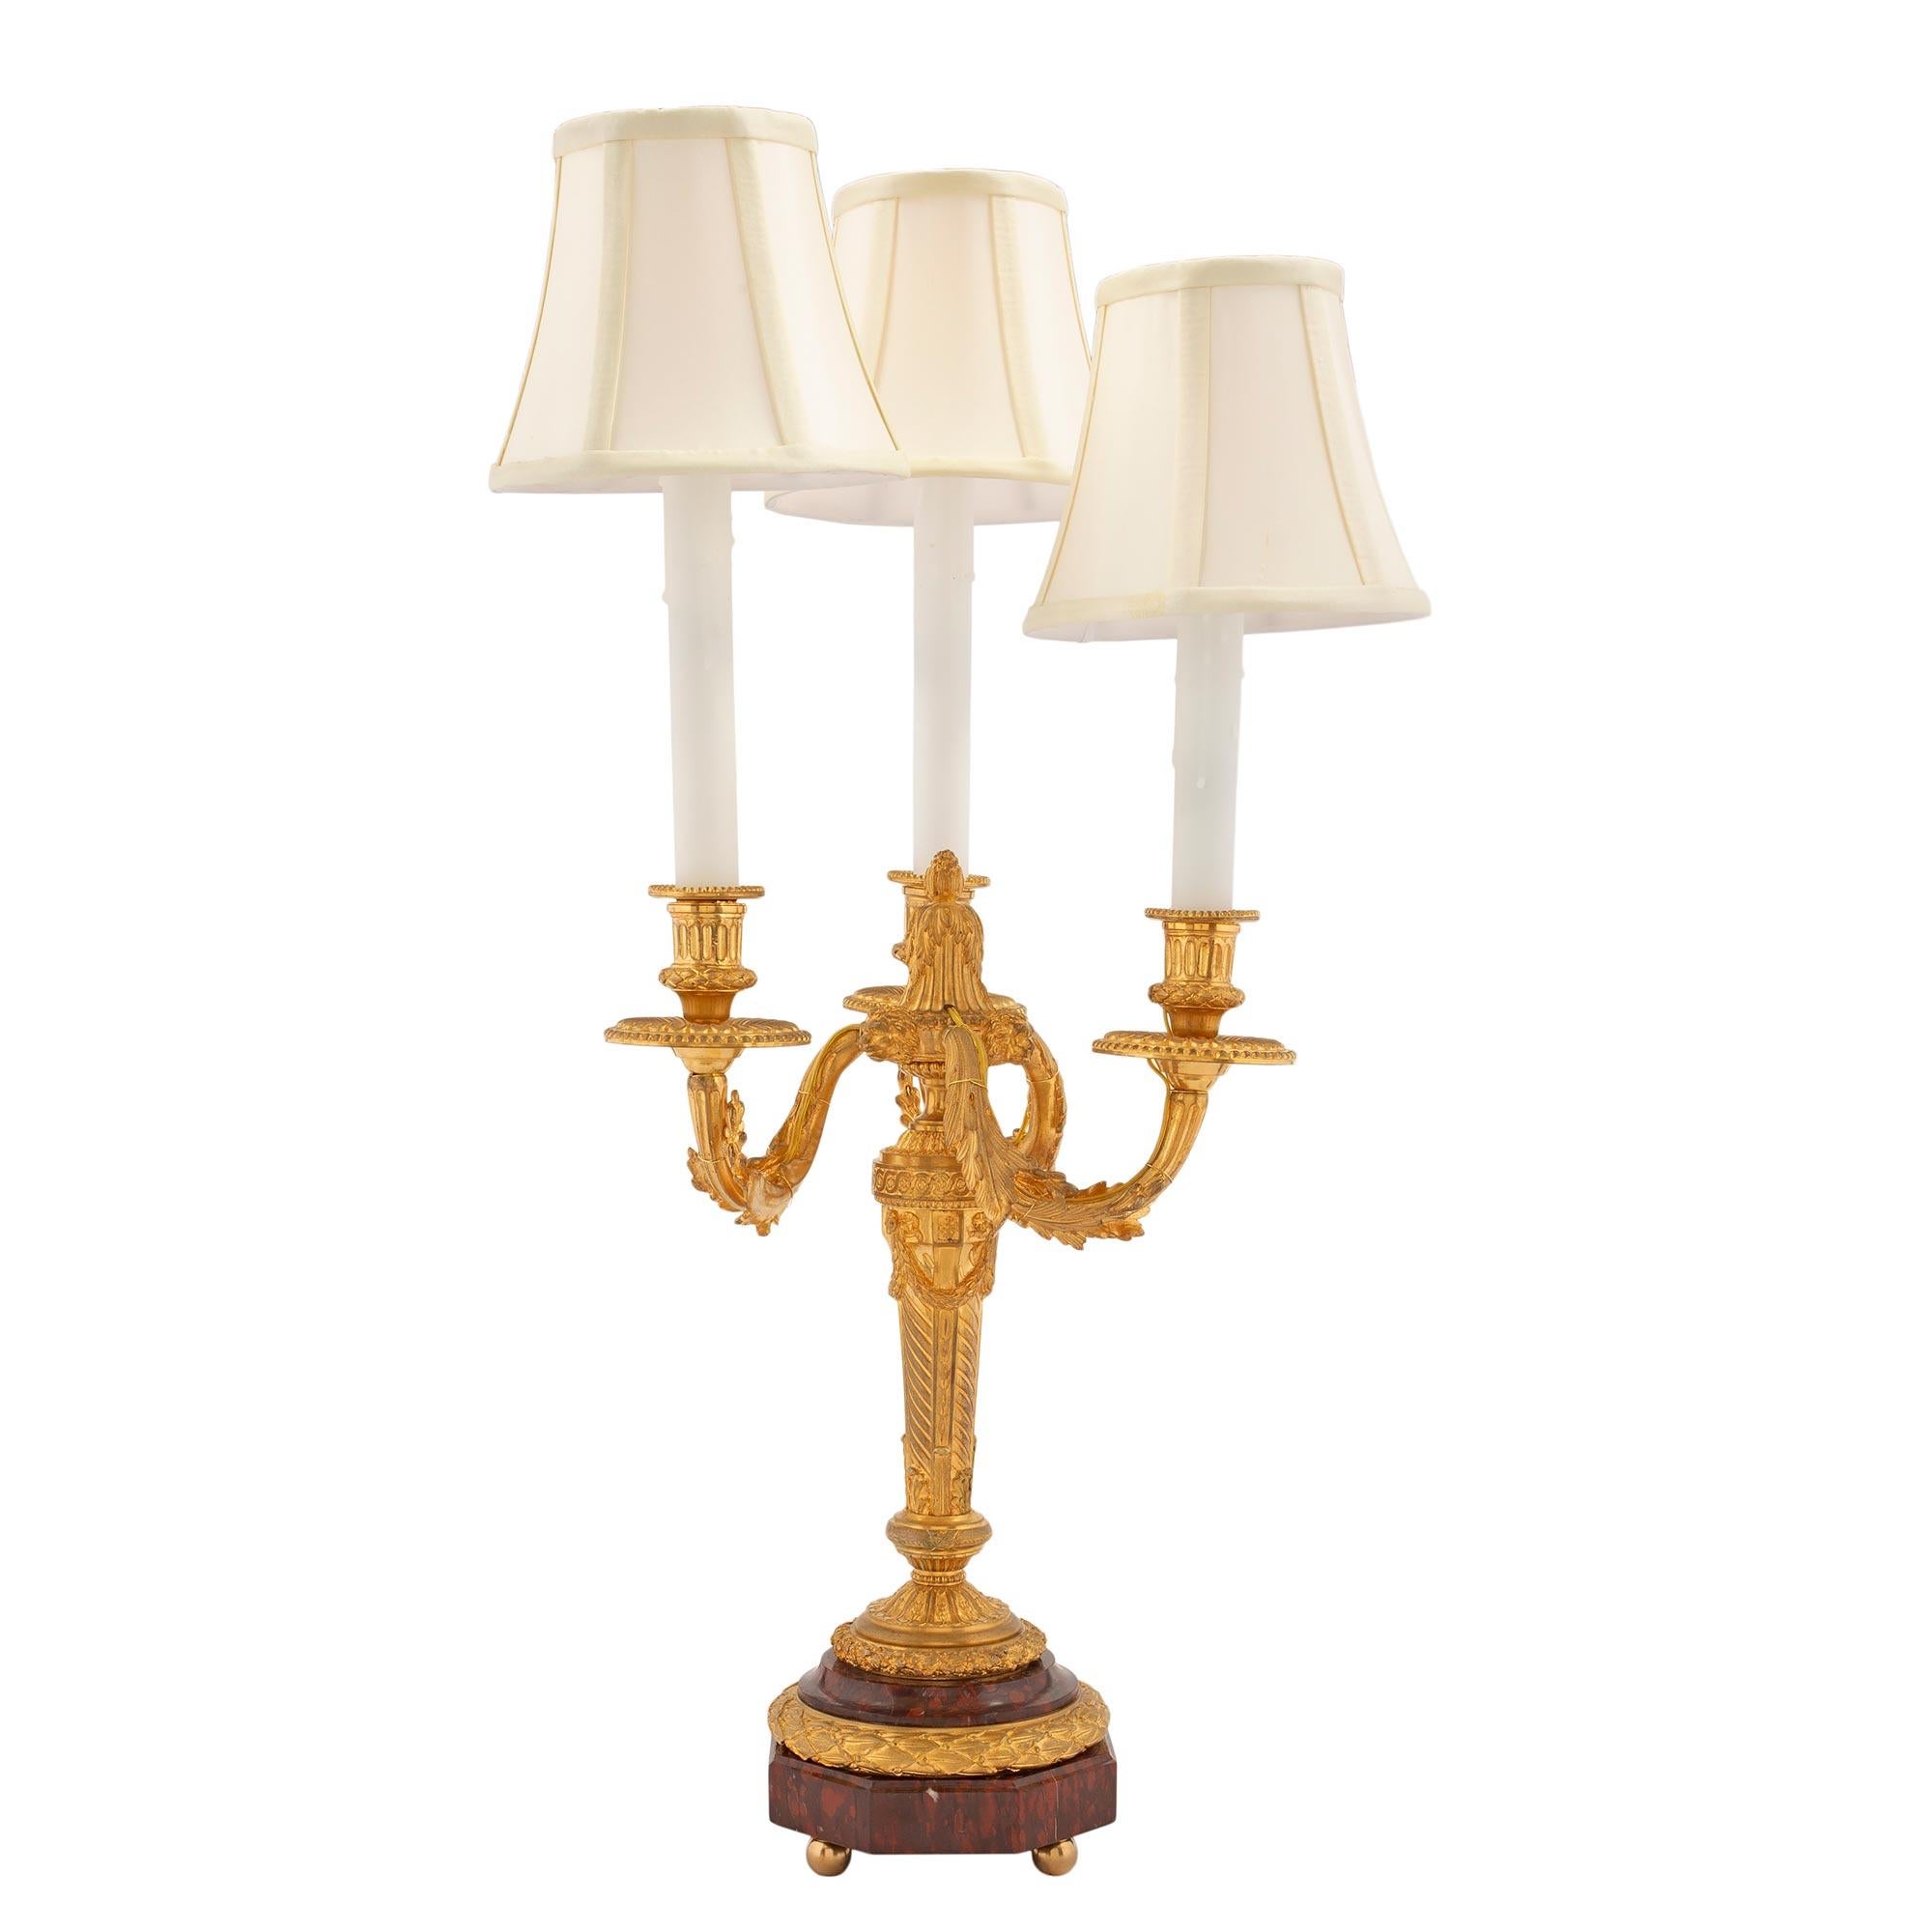 Une paire élégante et de haute qualité de lampes candélabres électrifiées à trois bras en bronze doré de style Louis XVI et en marbre Rouge Griotte du 19ème siècle. Chaque lampe est surélevée par de fins pieds à boule en bronze doré, sous une base